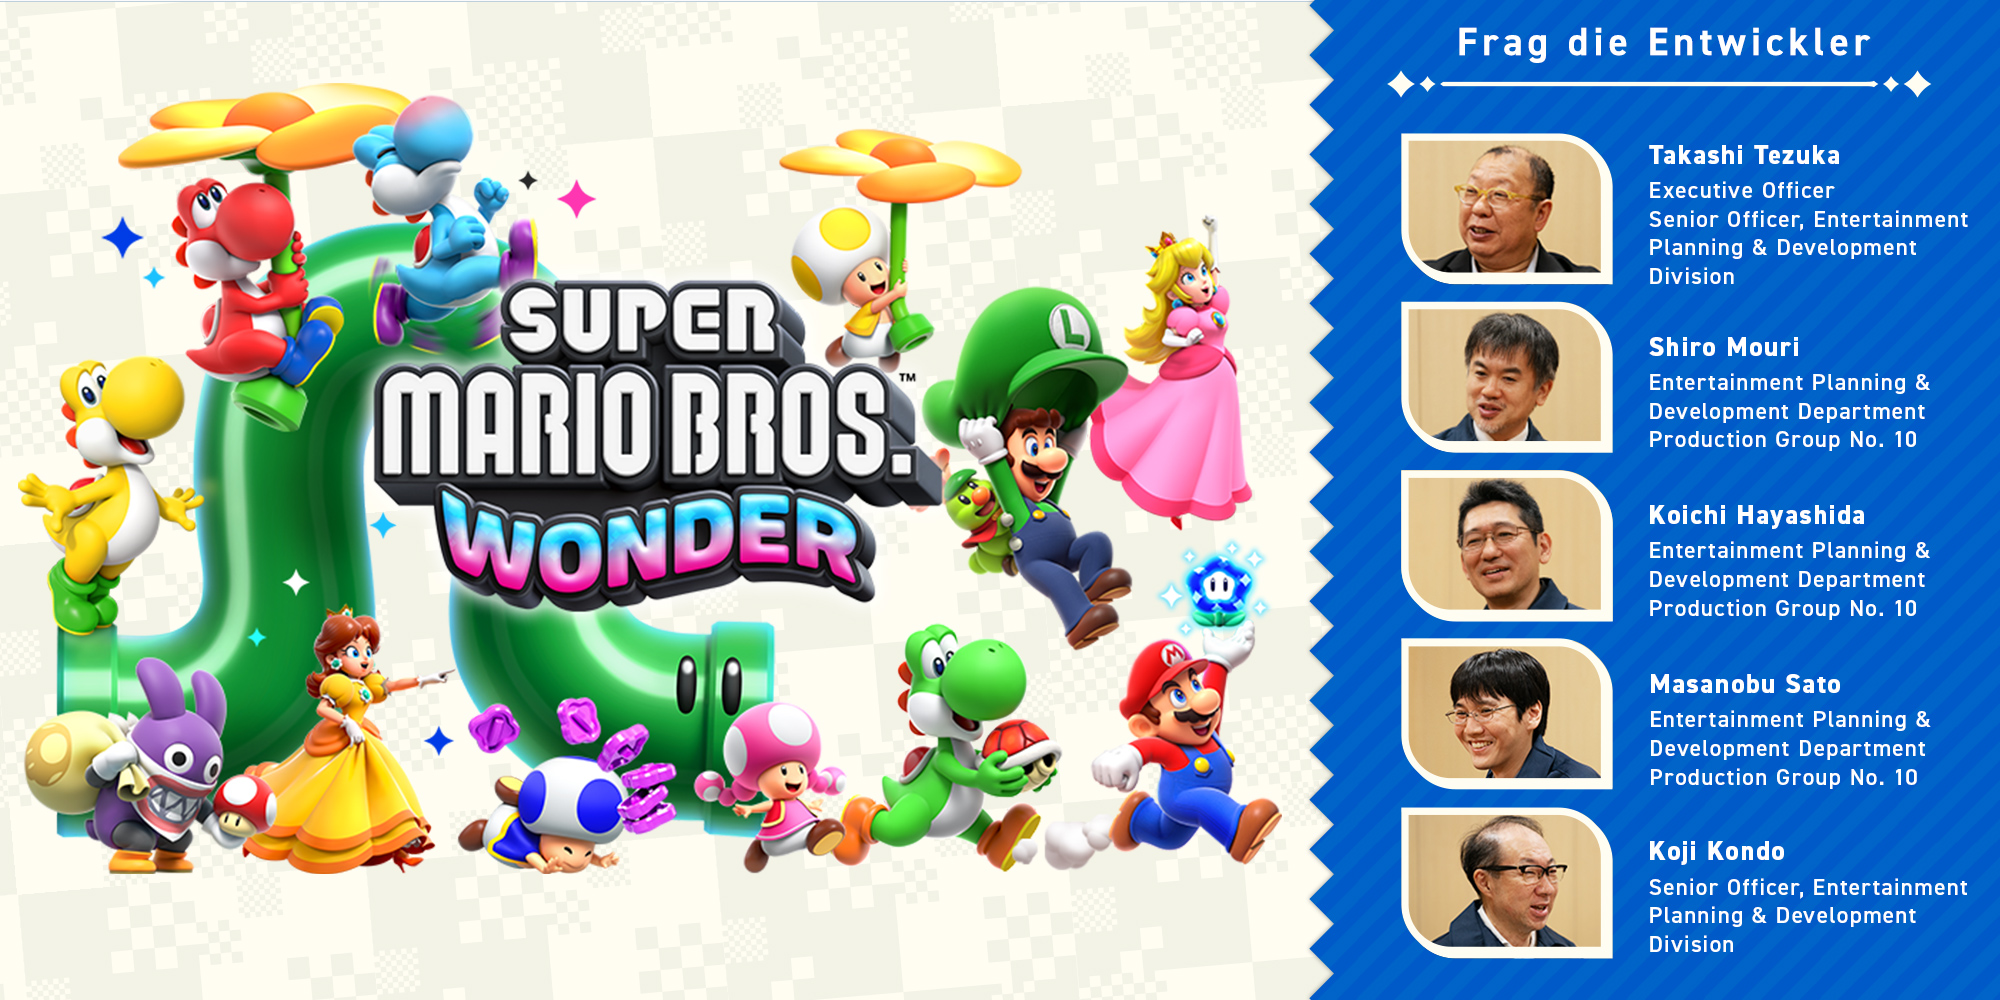 Frag die Entwickler Teil 11: Super Mario Bros. Wonder – Kapitel 4